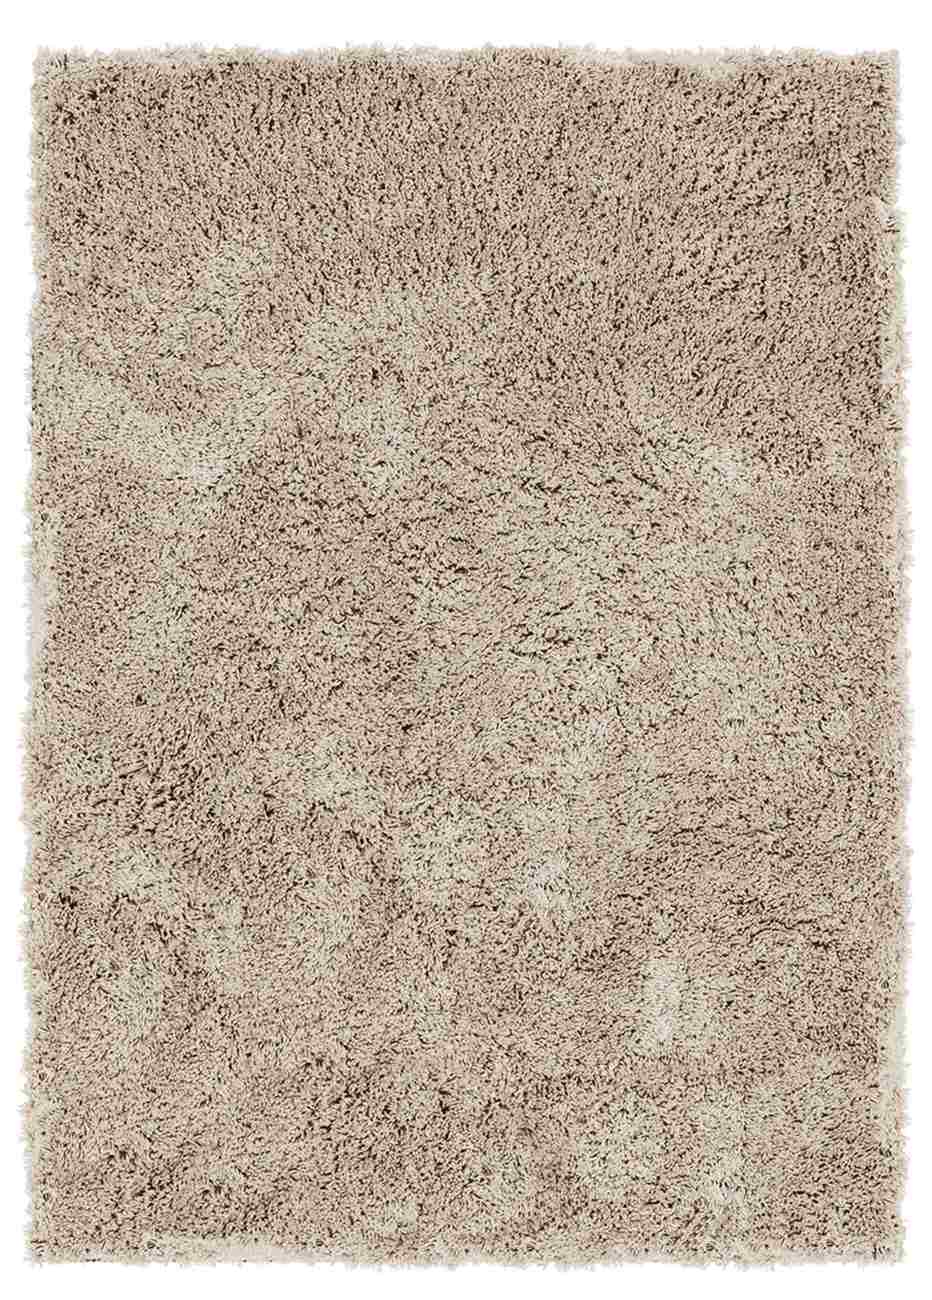 Der Teppich Celeste überzeugt mit seinem modernen Design. Gefertigt wurde er aus Kunstfasern, welches einen Taupe Farbton besitzt. Der Teppich besitzt eine Größe von 250x350 cm.